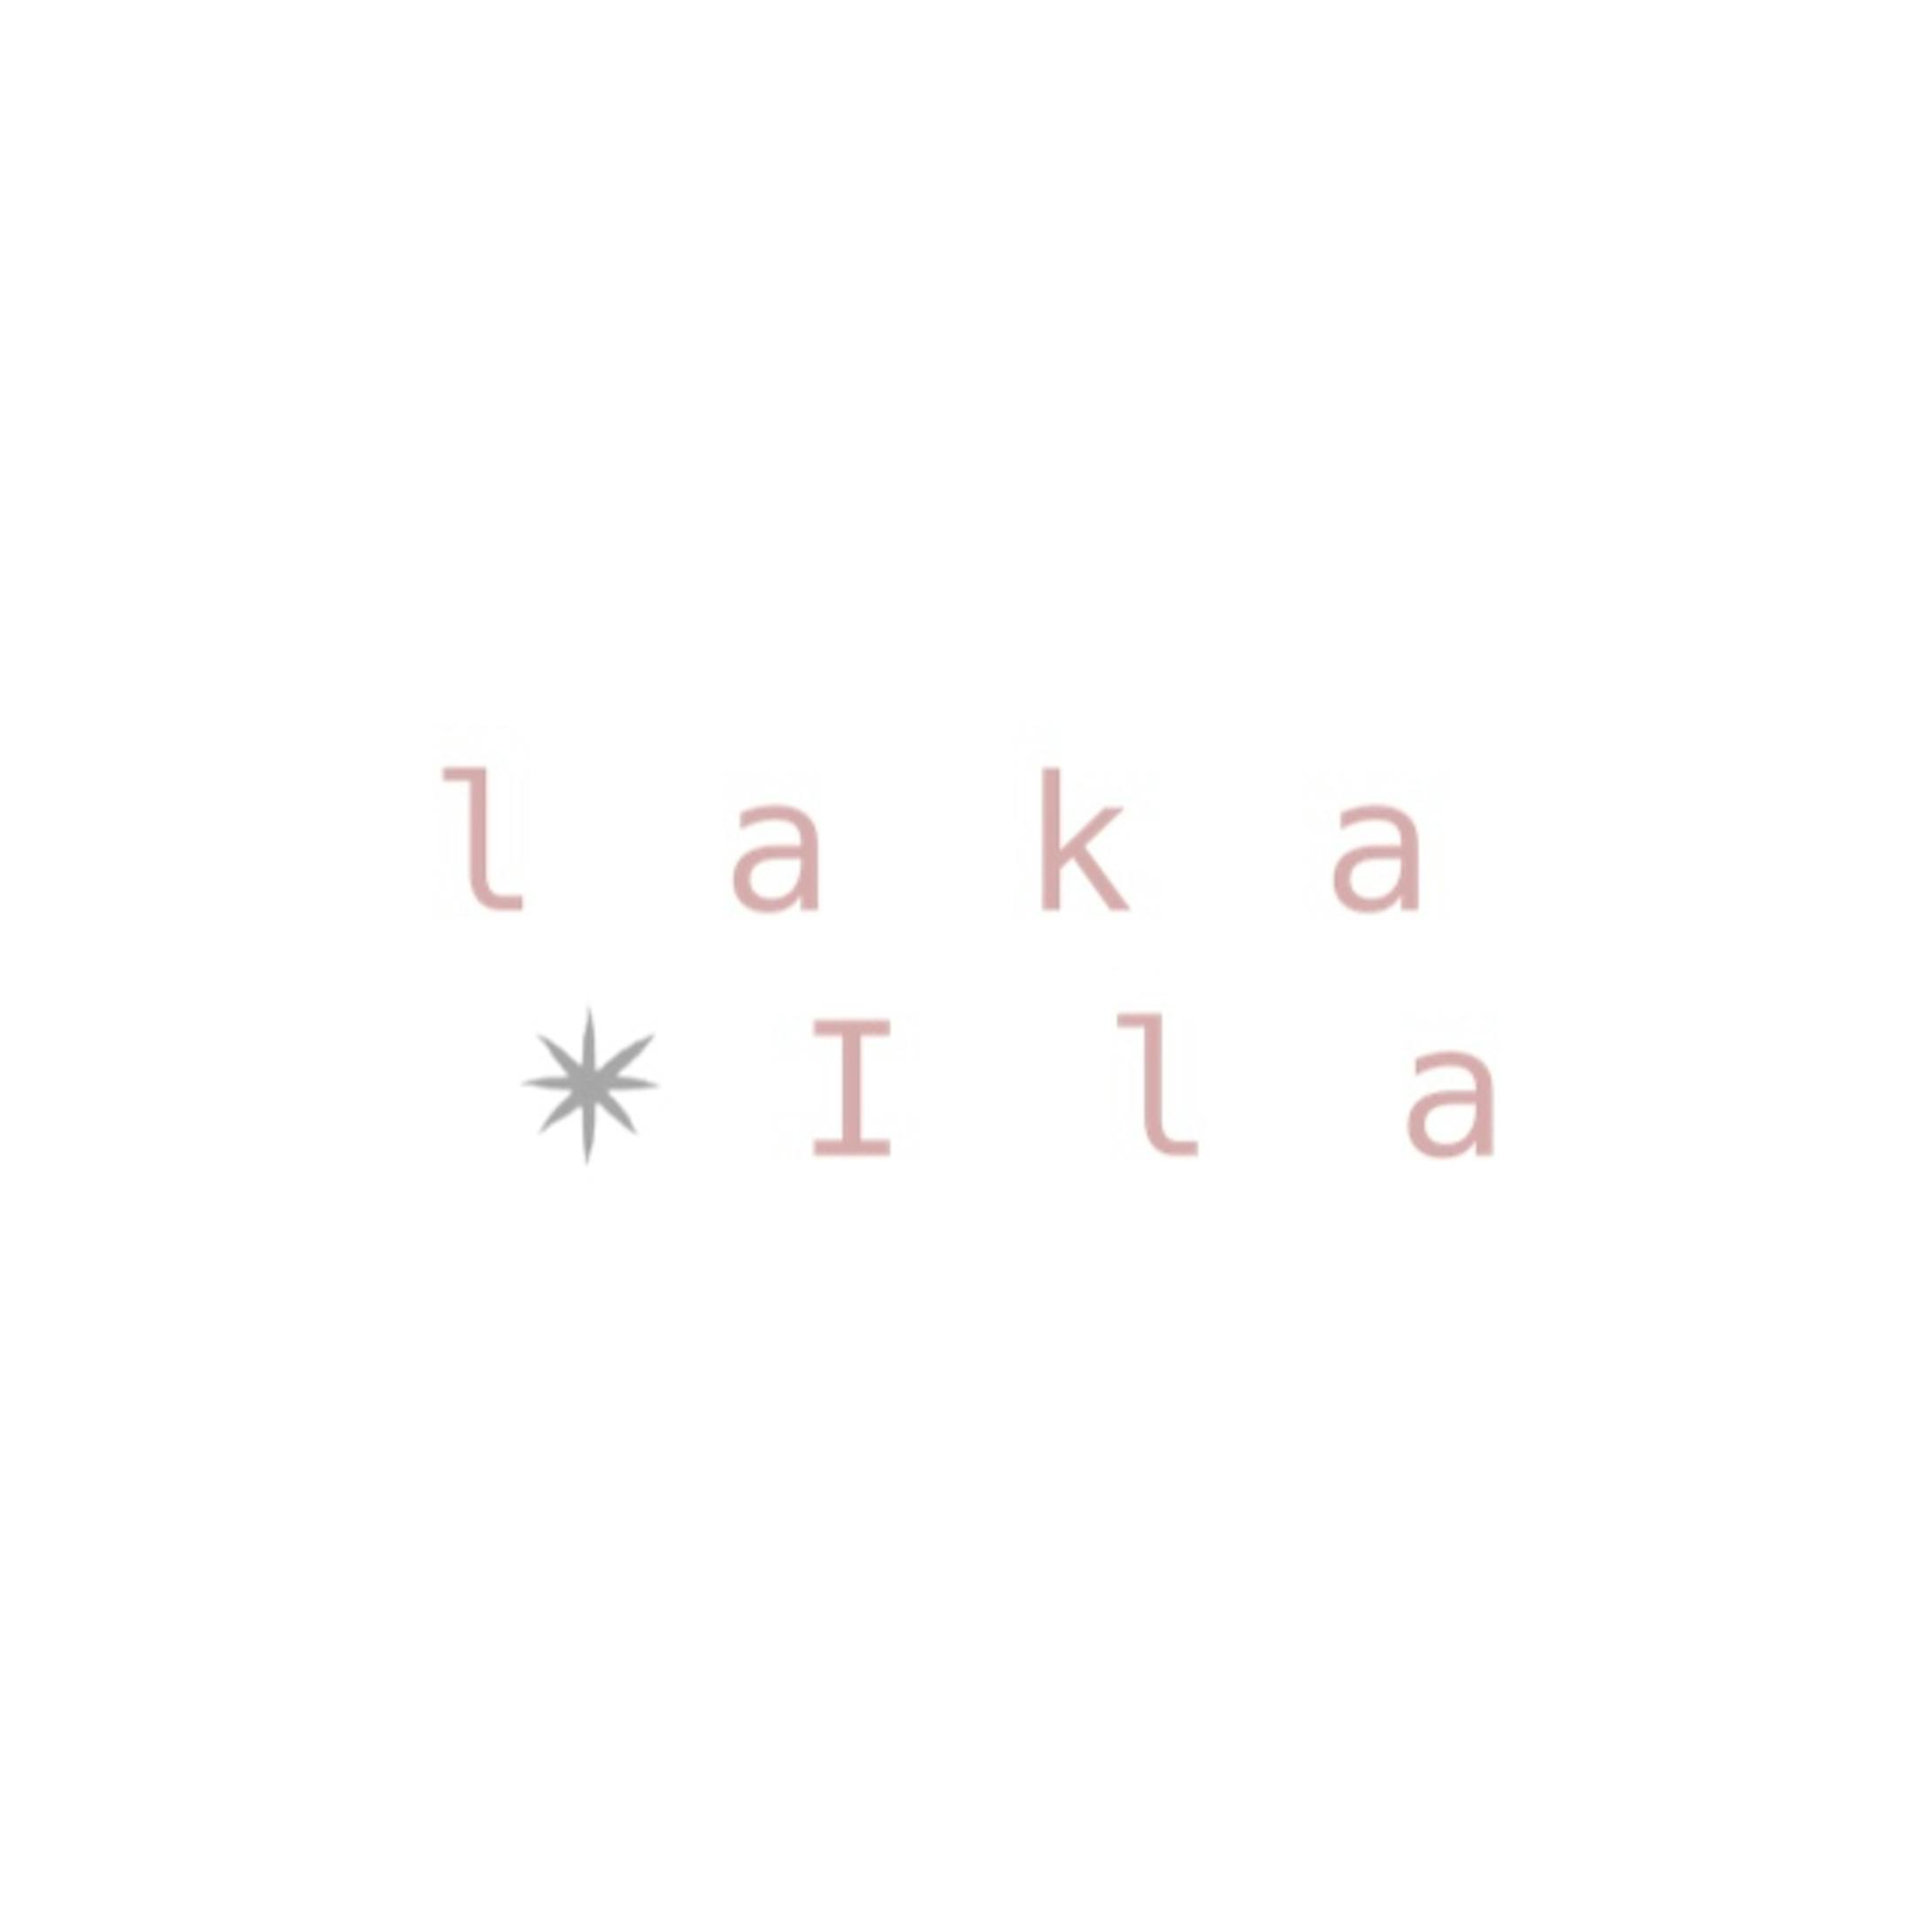 【Lakaira】パッケージとロゴデザイン-22